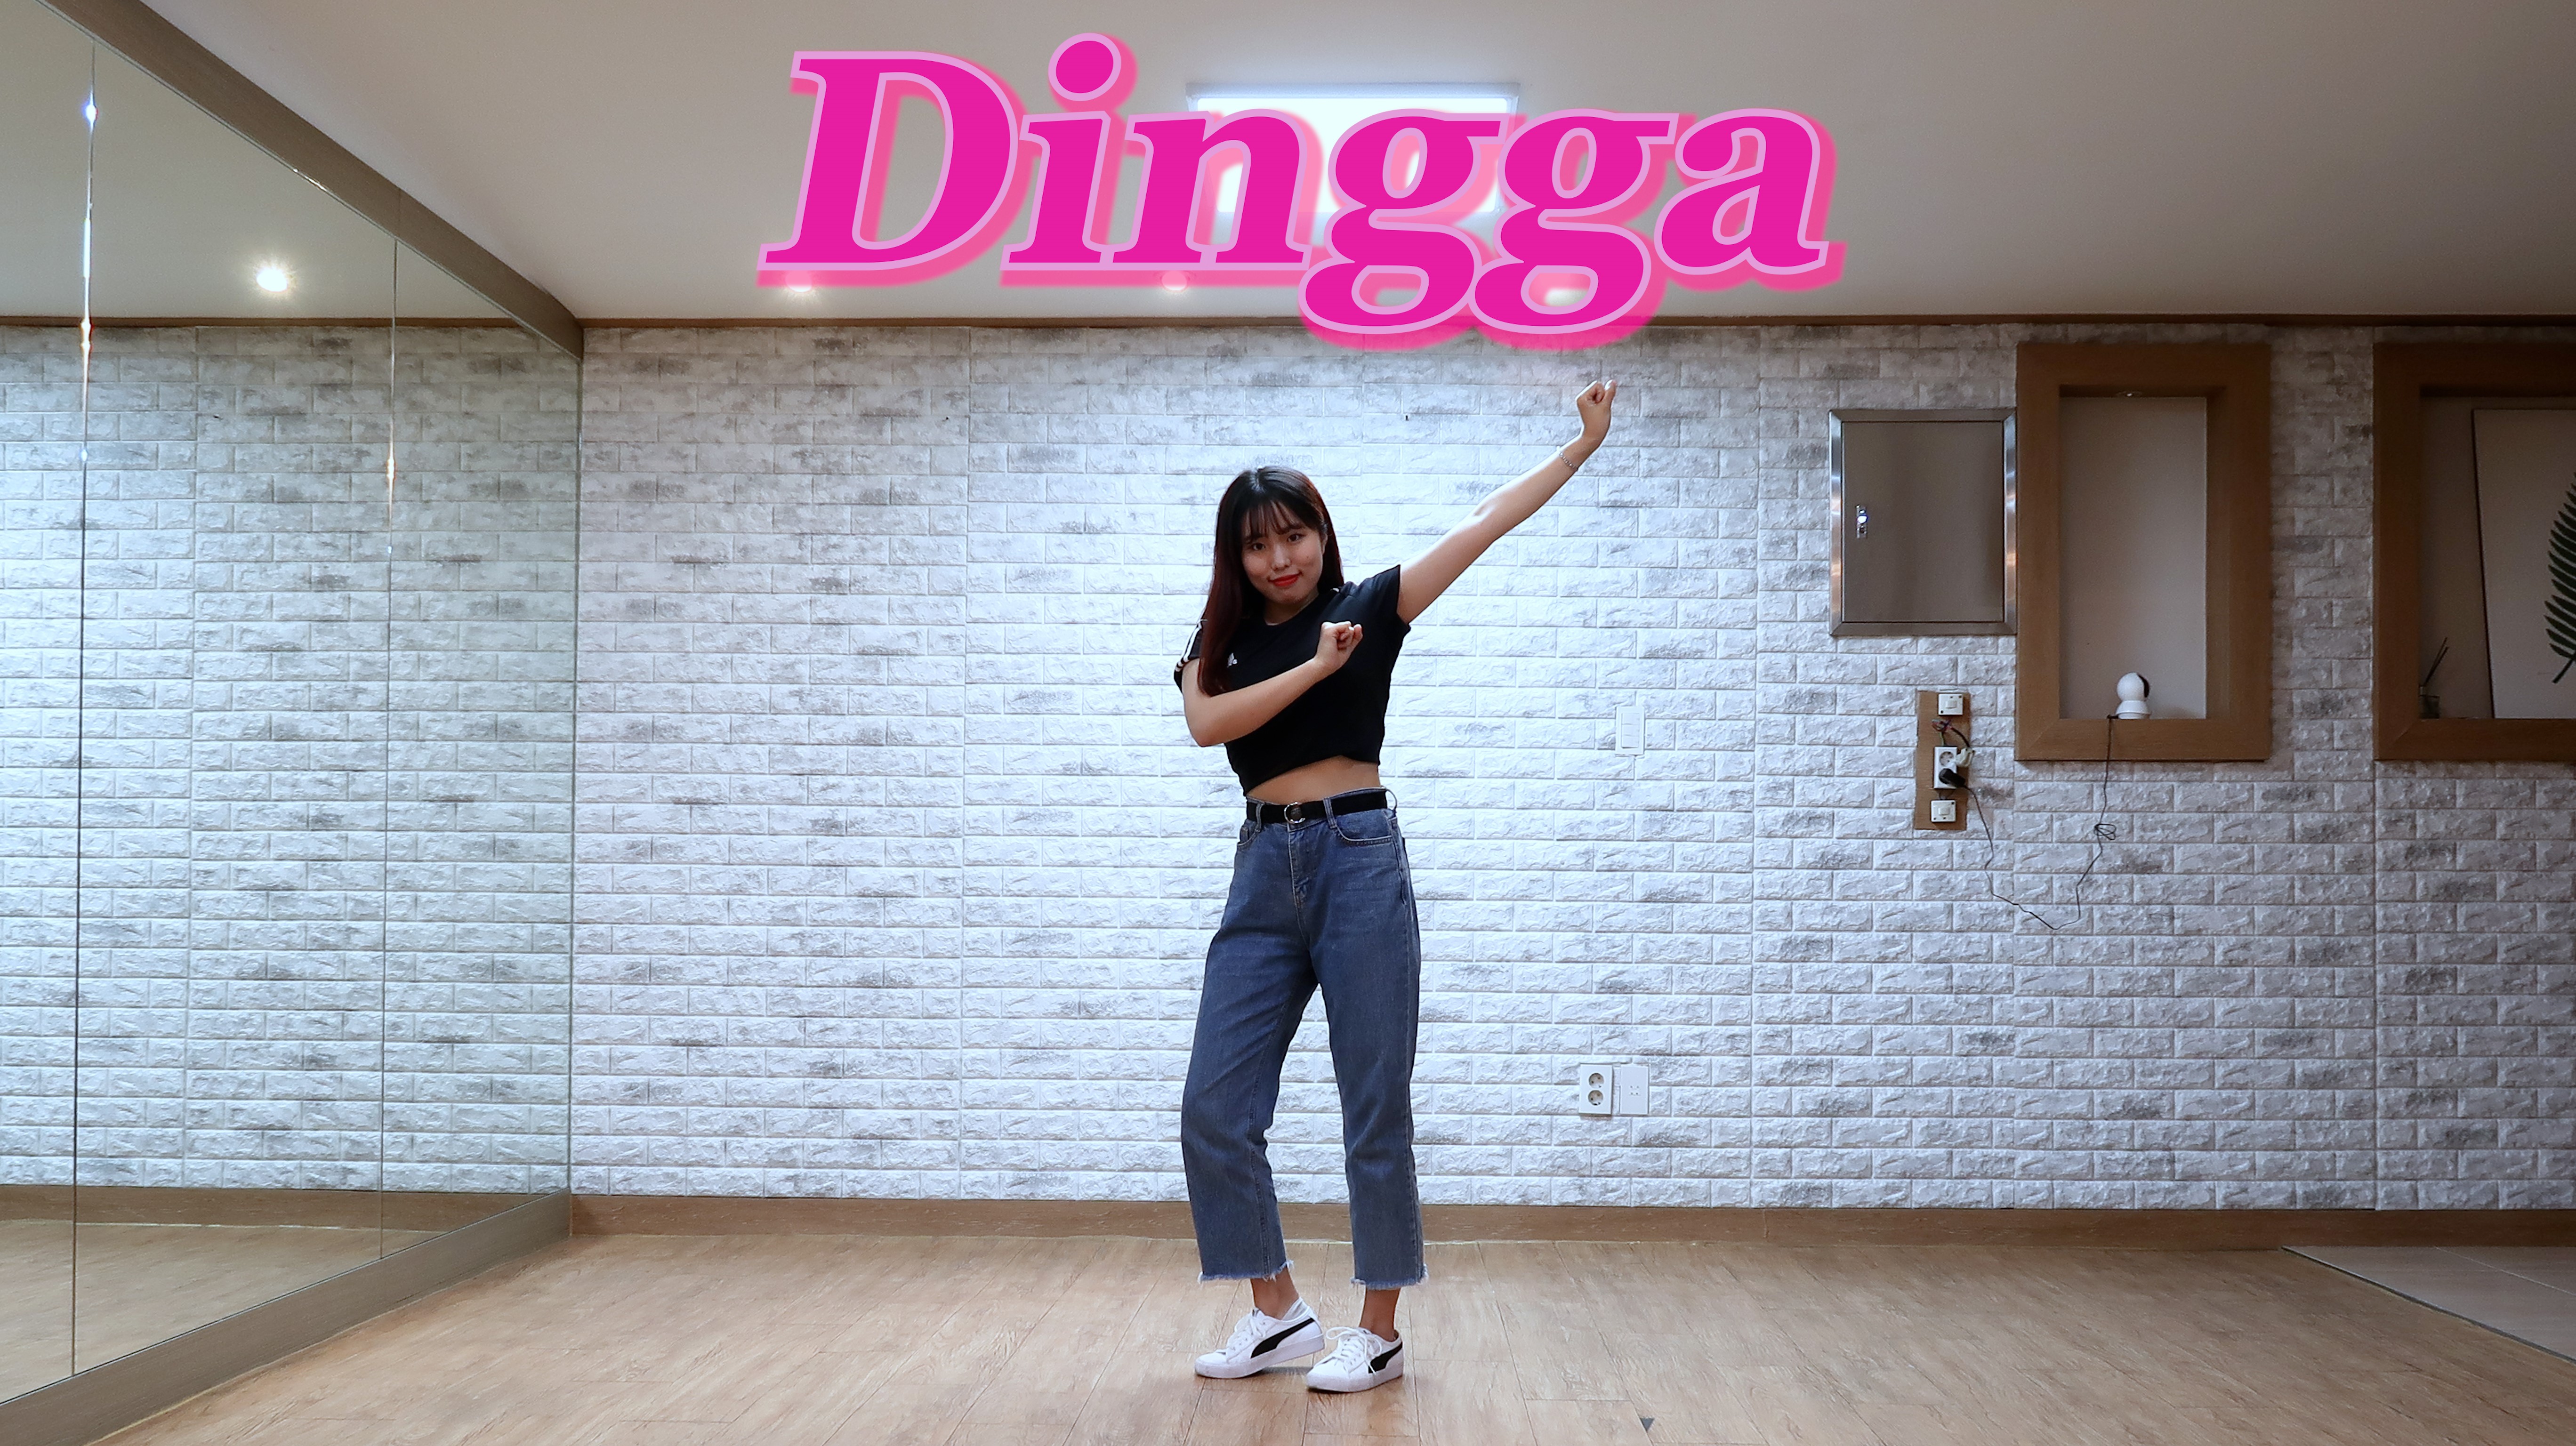 1603454413874.jpg : 마마무의 신곡 'Dingga'를 빠른 댄스커버 해보았습니다!!